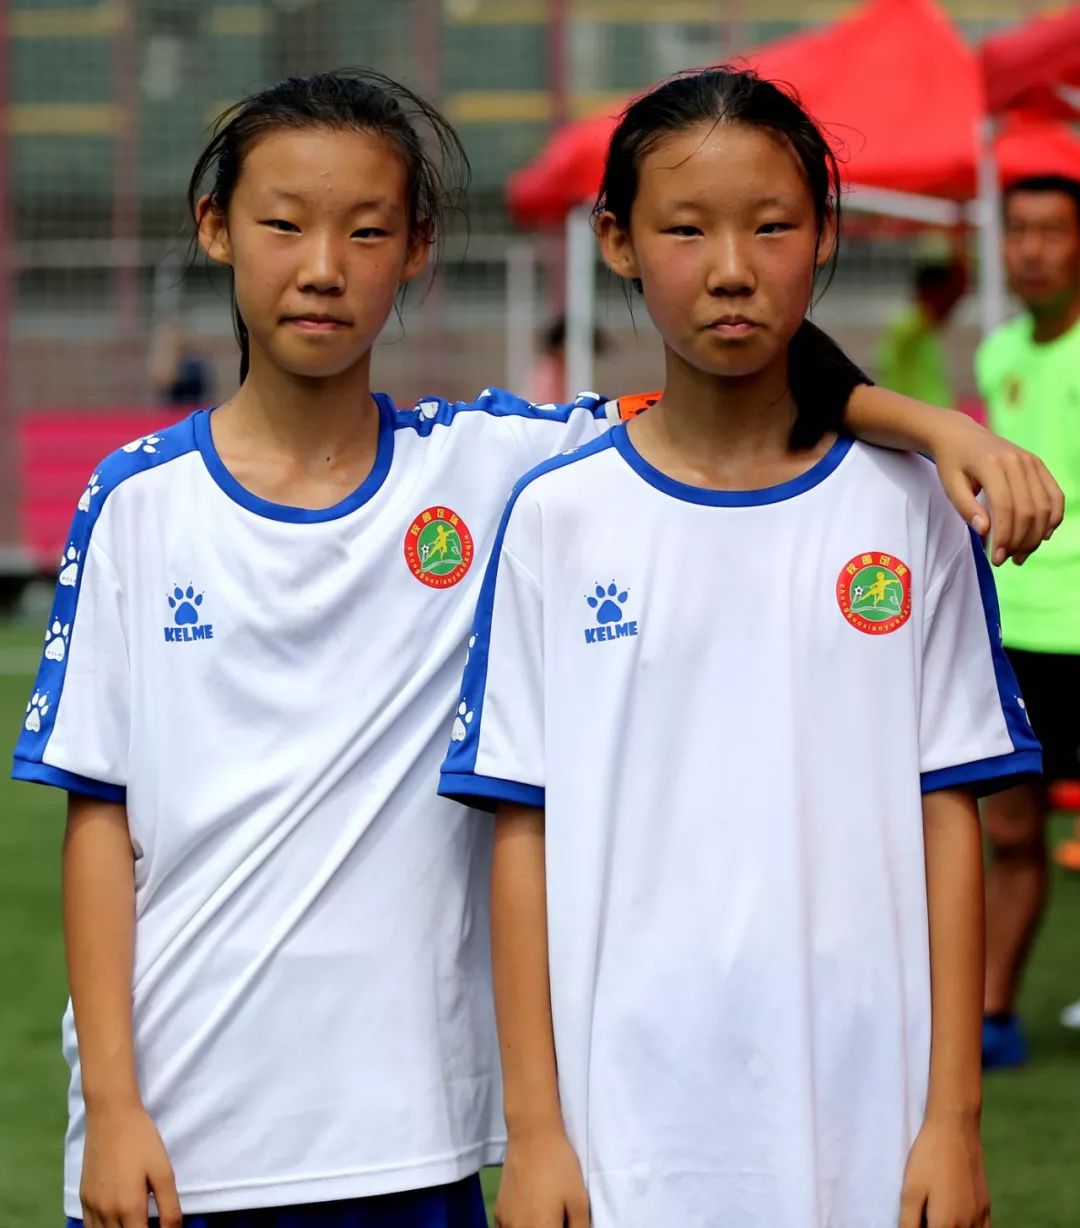 【全国校园足球夏令营】双胞胎姐妹的足球路